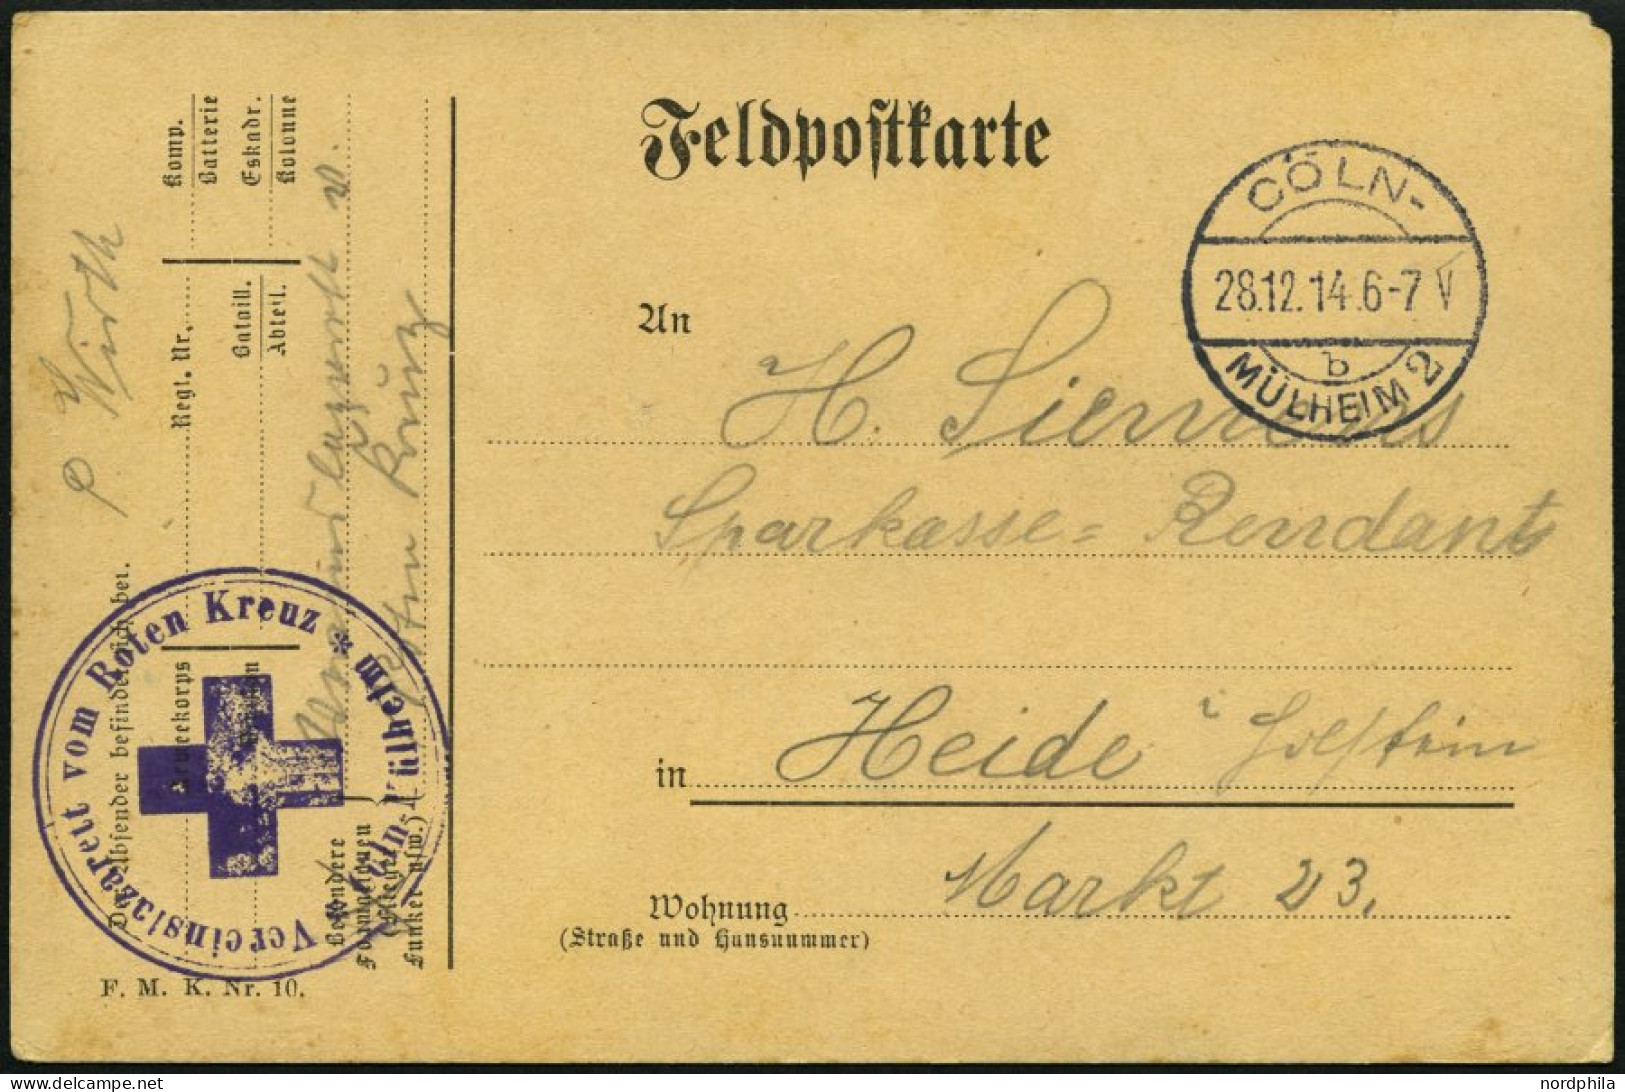 FELDPOST I.WK 1914, Feldpostkarte Aus Dem Rotkreuz-Vereinslazarett Cöln/Mühlheim Nach Heide, Mit Violettem Lazarettstemp - Cartas & Documentos